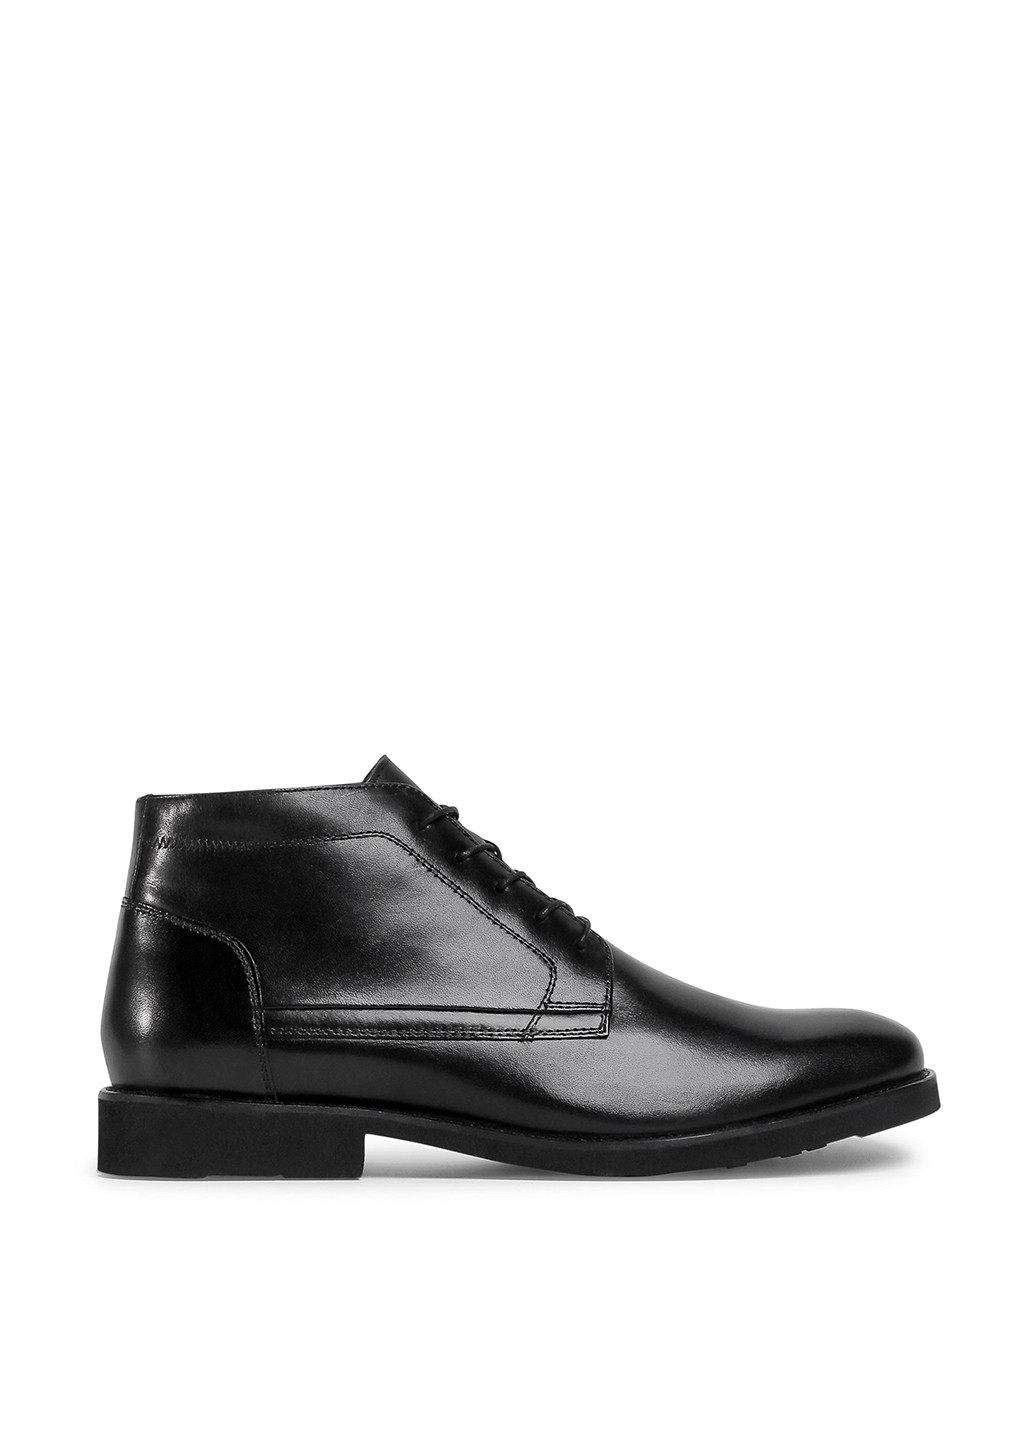 Черные осенние черевики lasocki for men mi08-c774-706-09 дезерты Lasocki for men